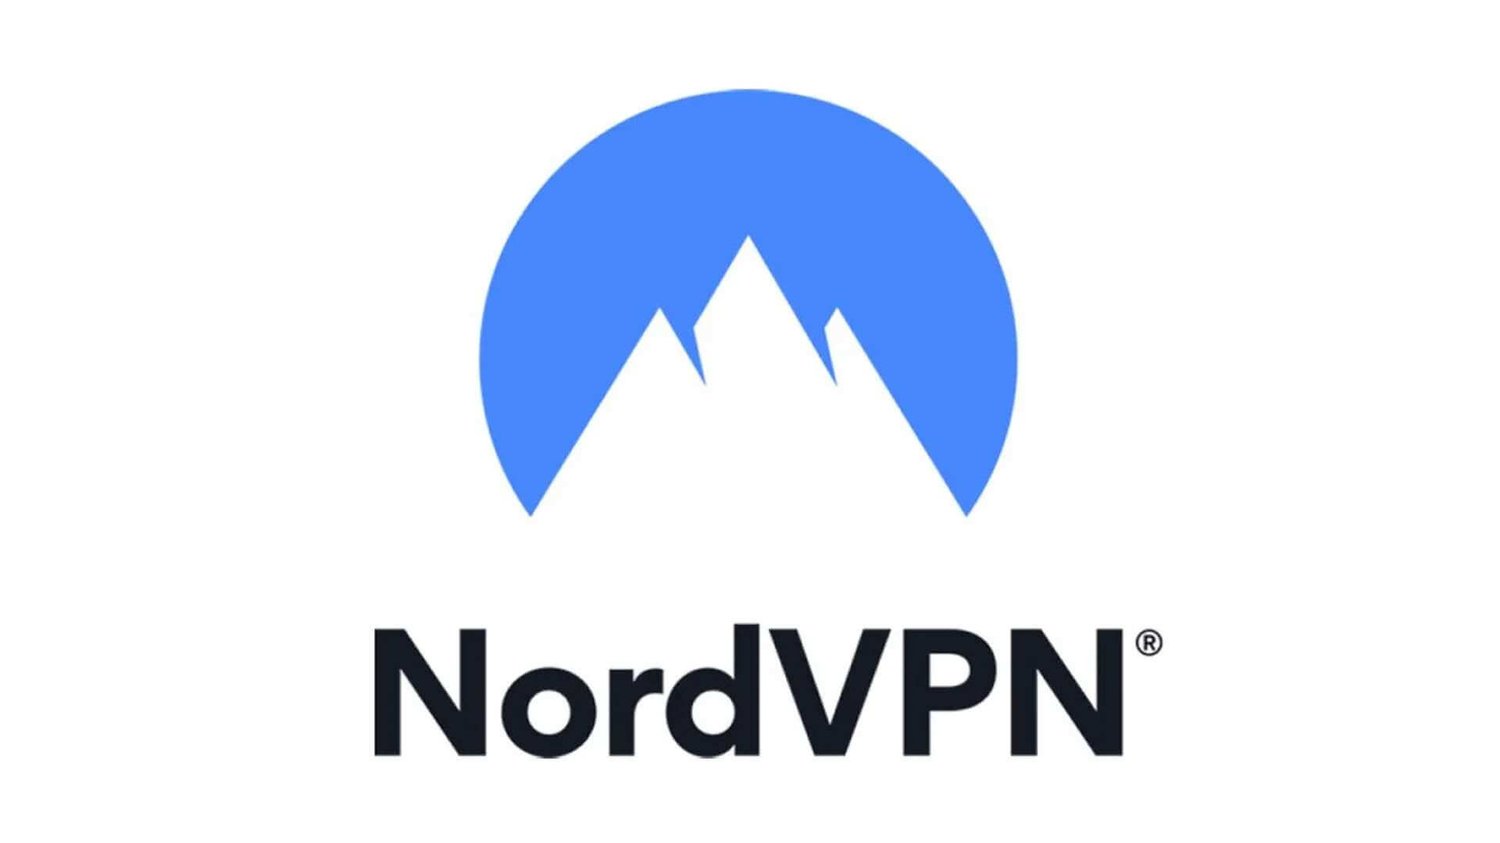 VPN for Streaming, NordVPN